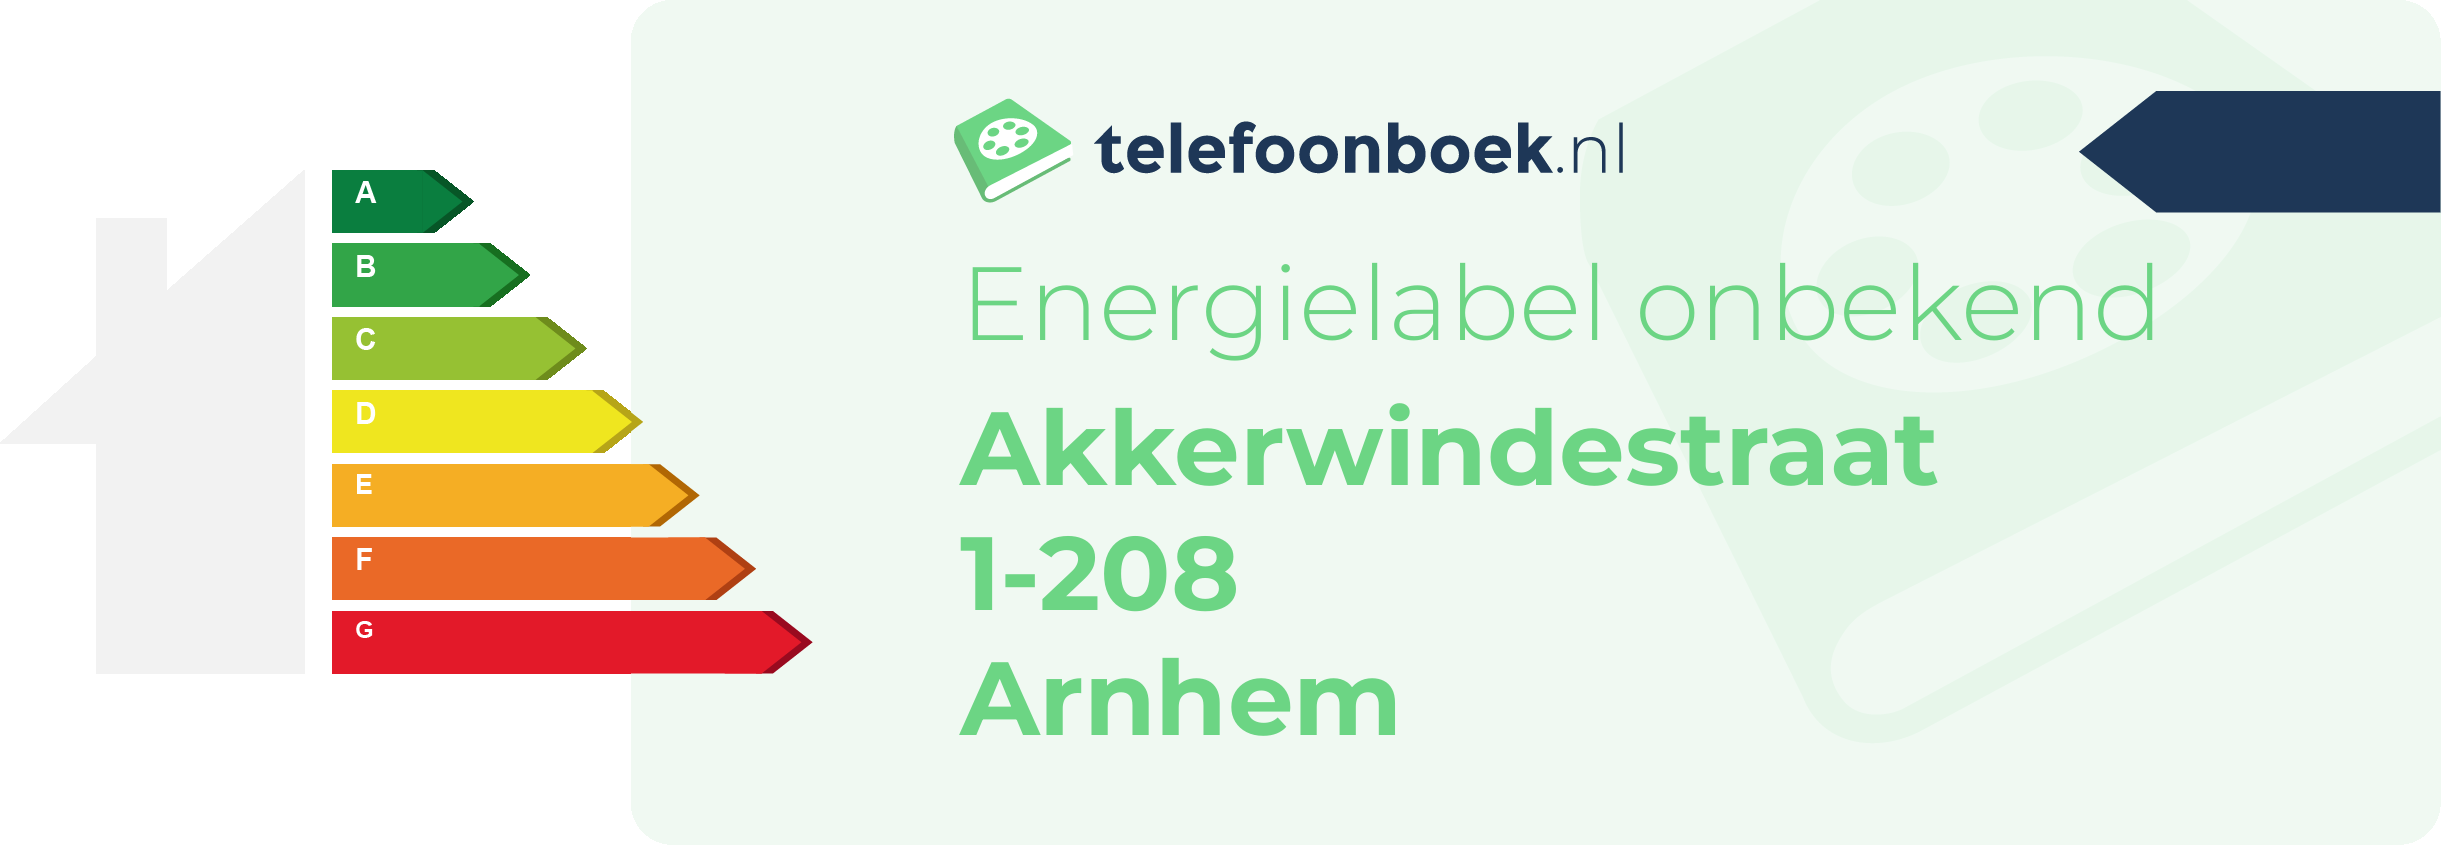 Energielabel Akkerwindestraat 1-208 Arnhem